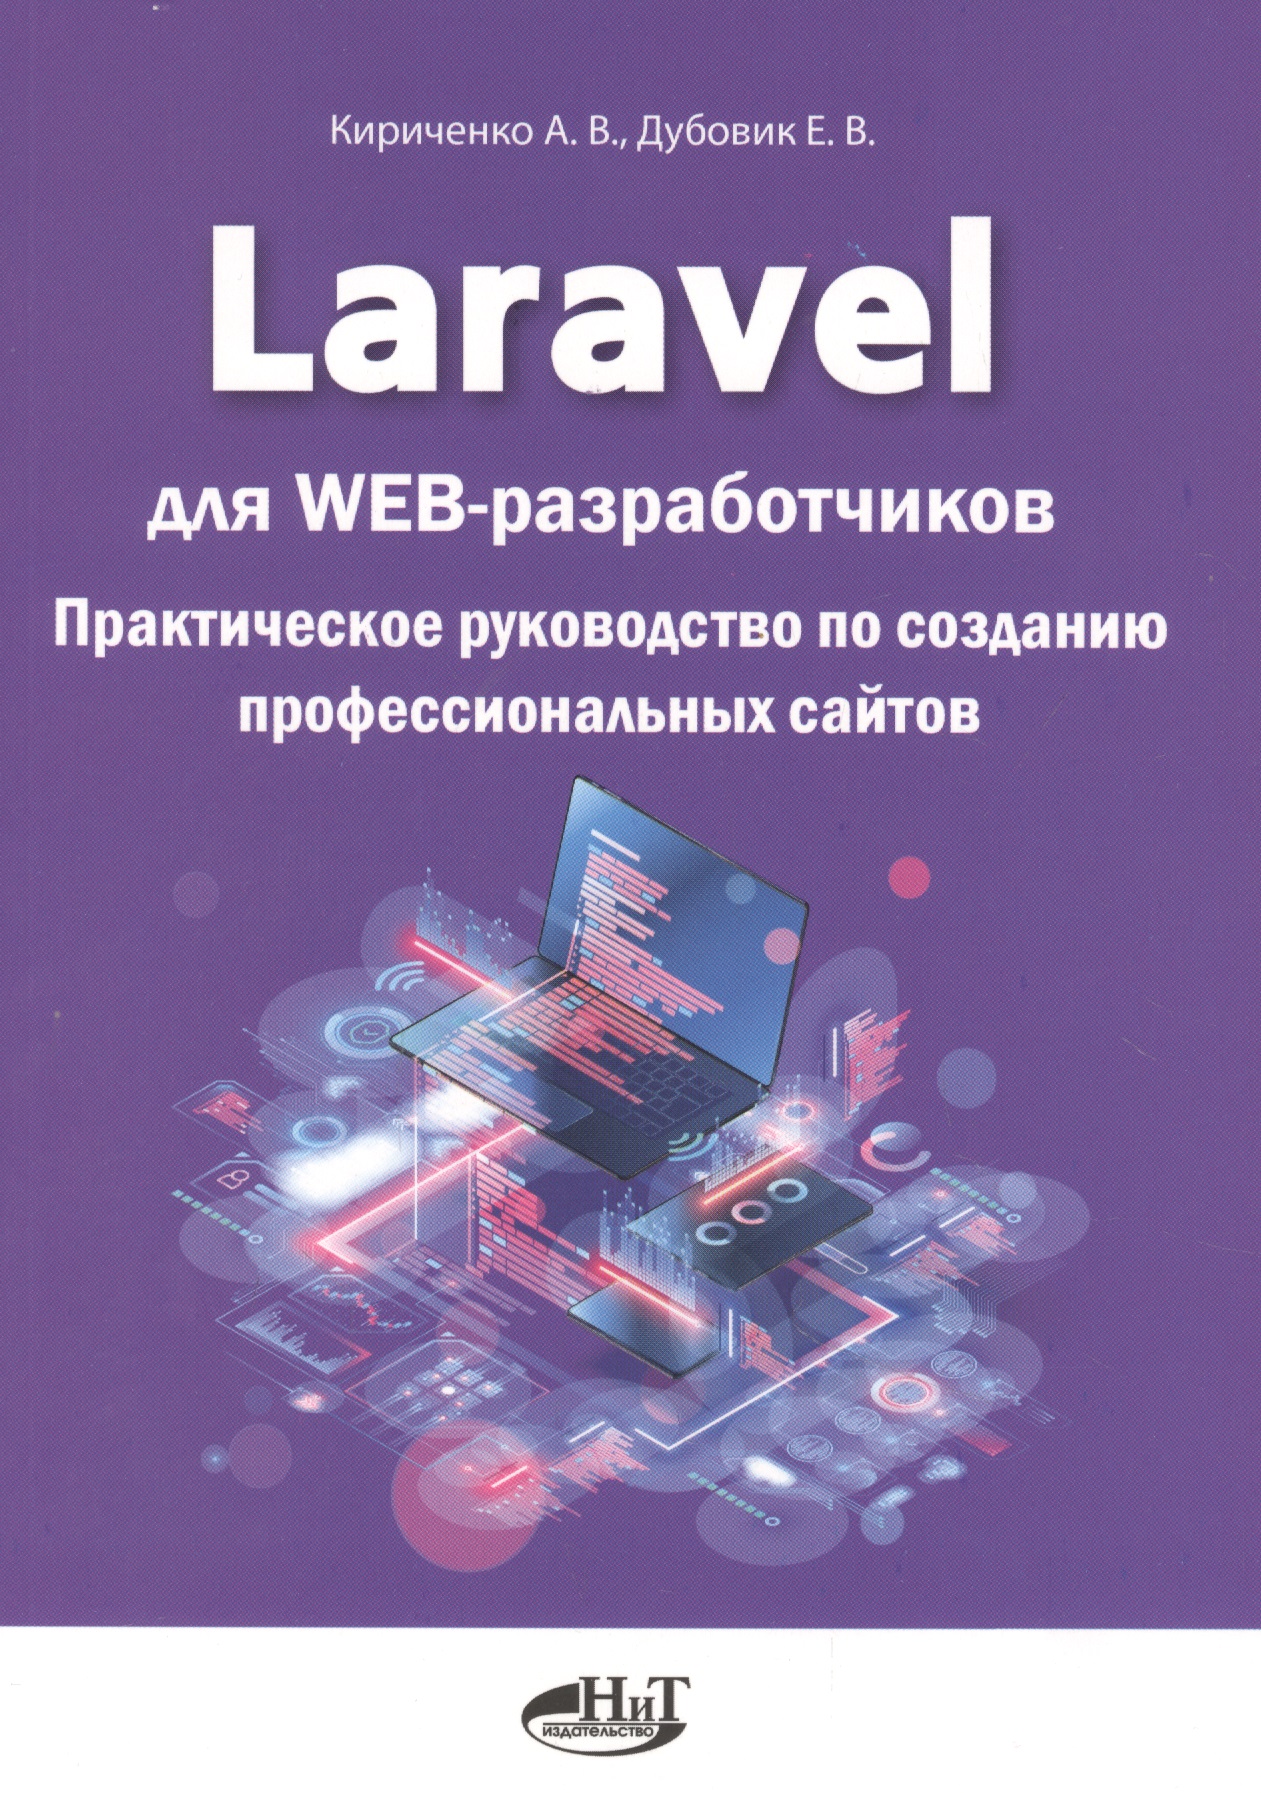 Laravel для web-разработчиков. Практическое руководство по созданию профессиональных сайтов